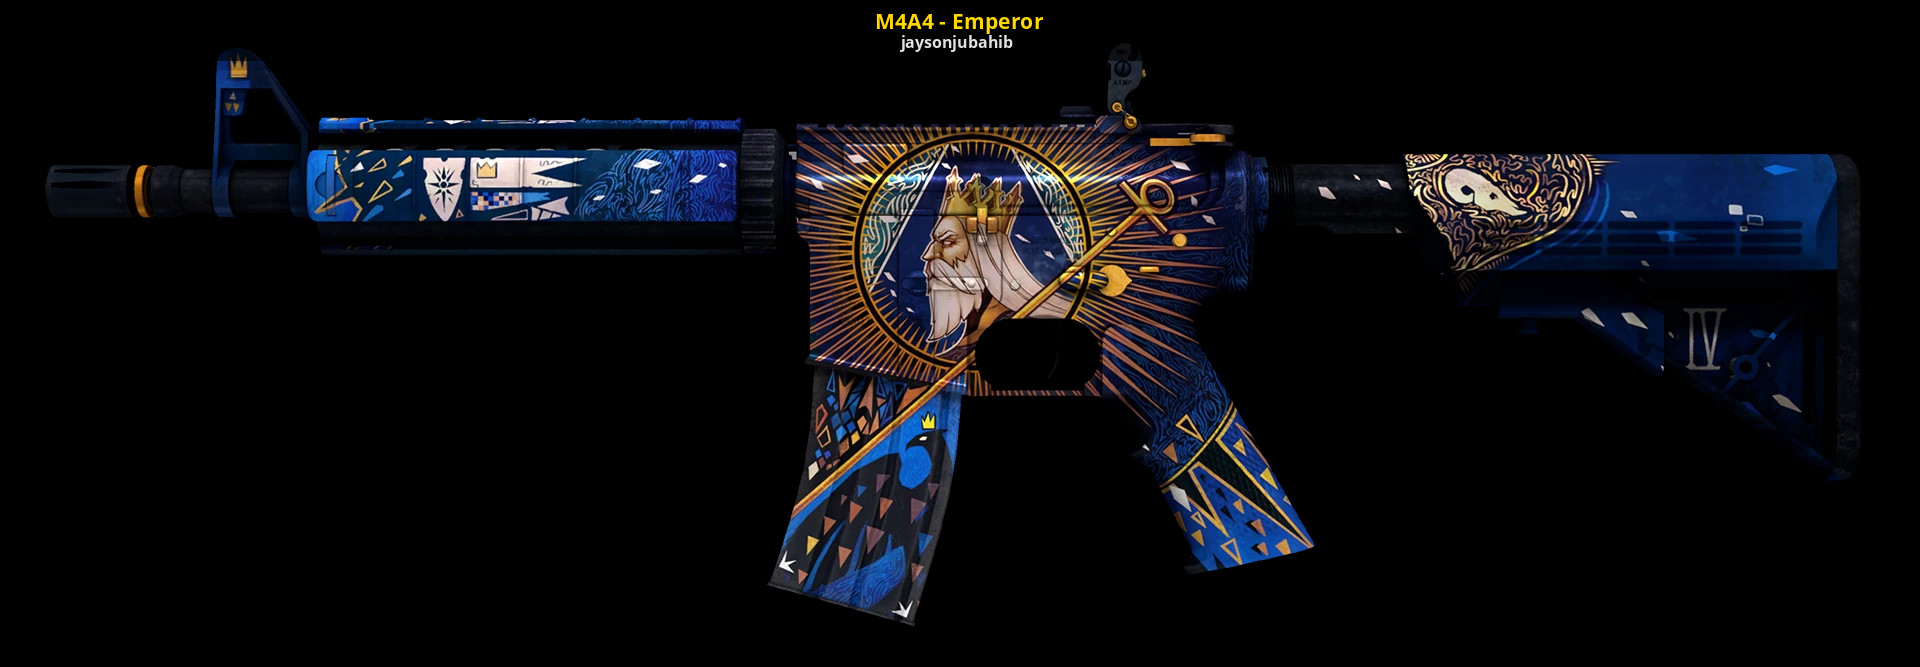 M4a4 emperor цена фото 7